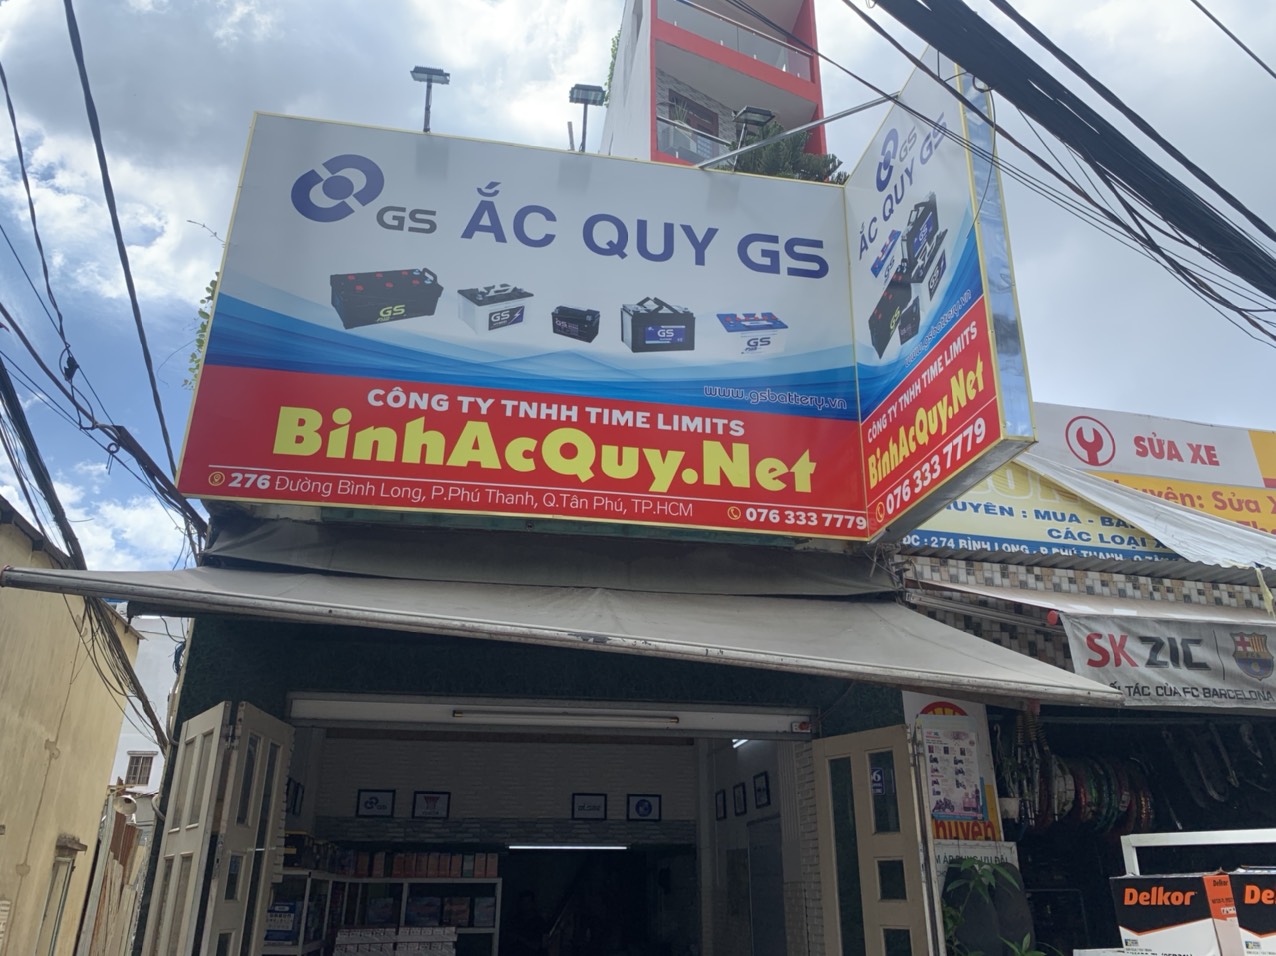 đại lý chuyên phân phối bình ắc quy tại quận Bình Tân BinhAcQuyNet